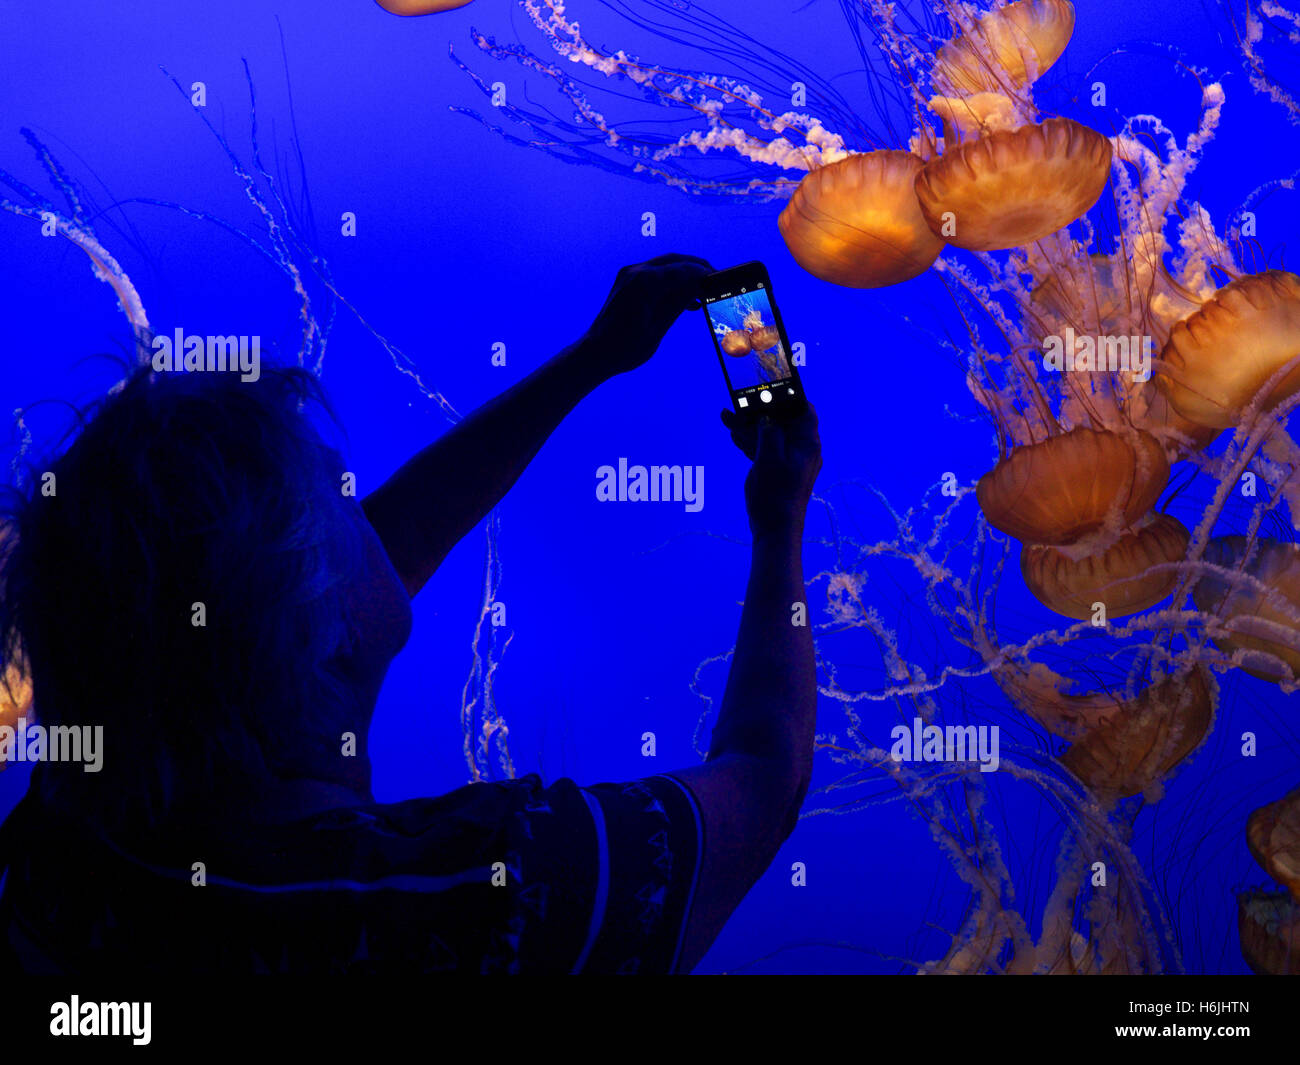 Frau mit Apple iPhone 5 s Smartphone Aufnahme Bild von Quallen im Monterey Bay Aquarium Monterey Kalifornien USA Stockfoto